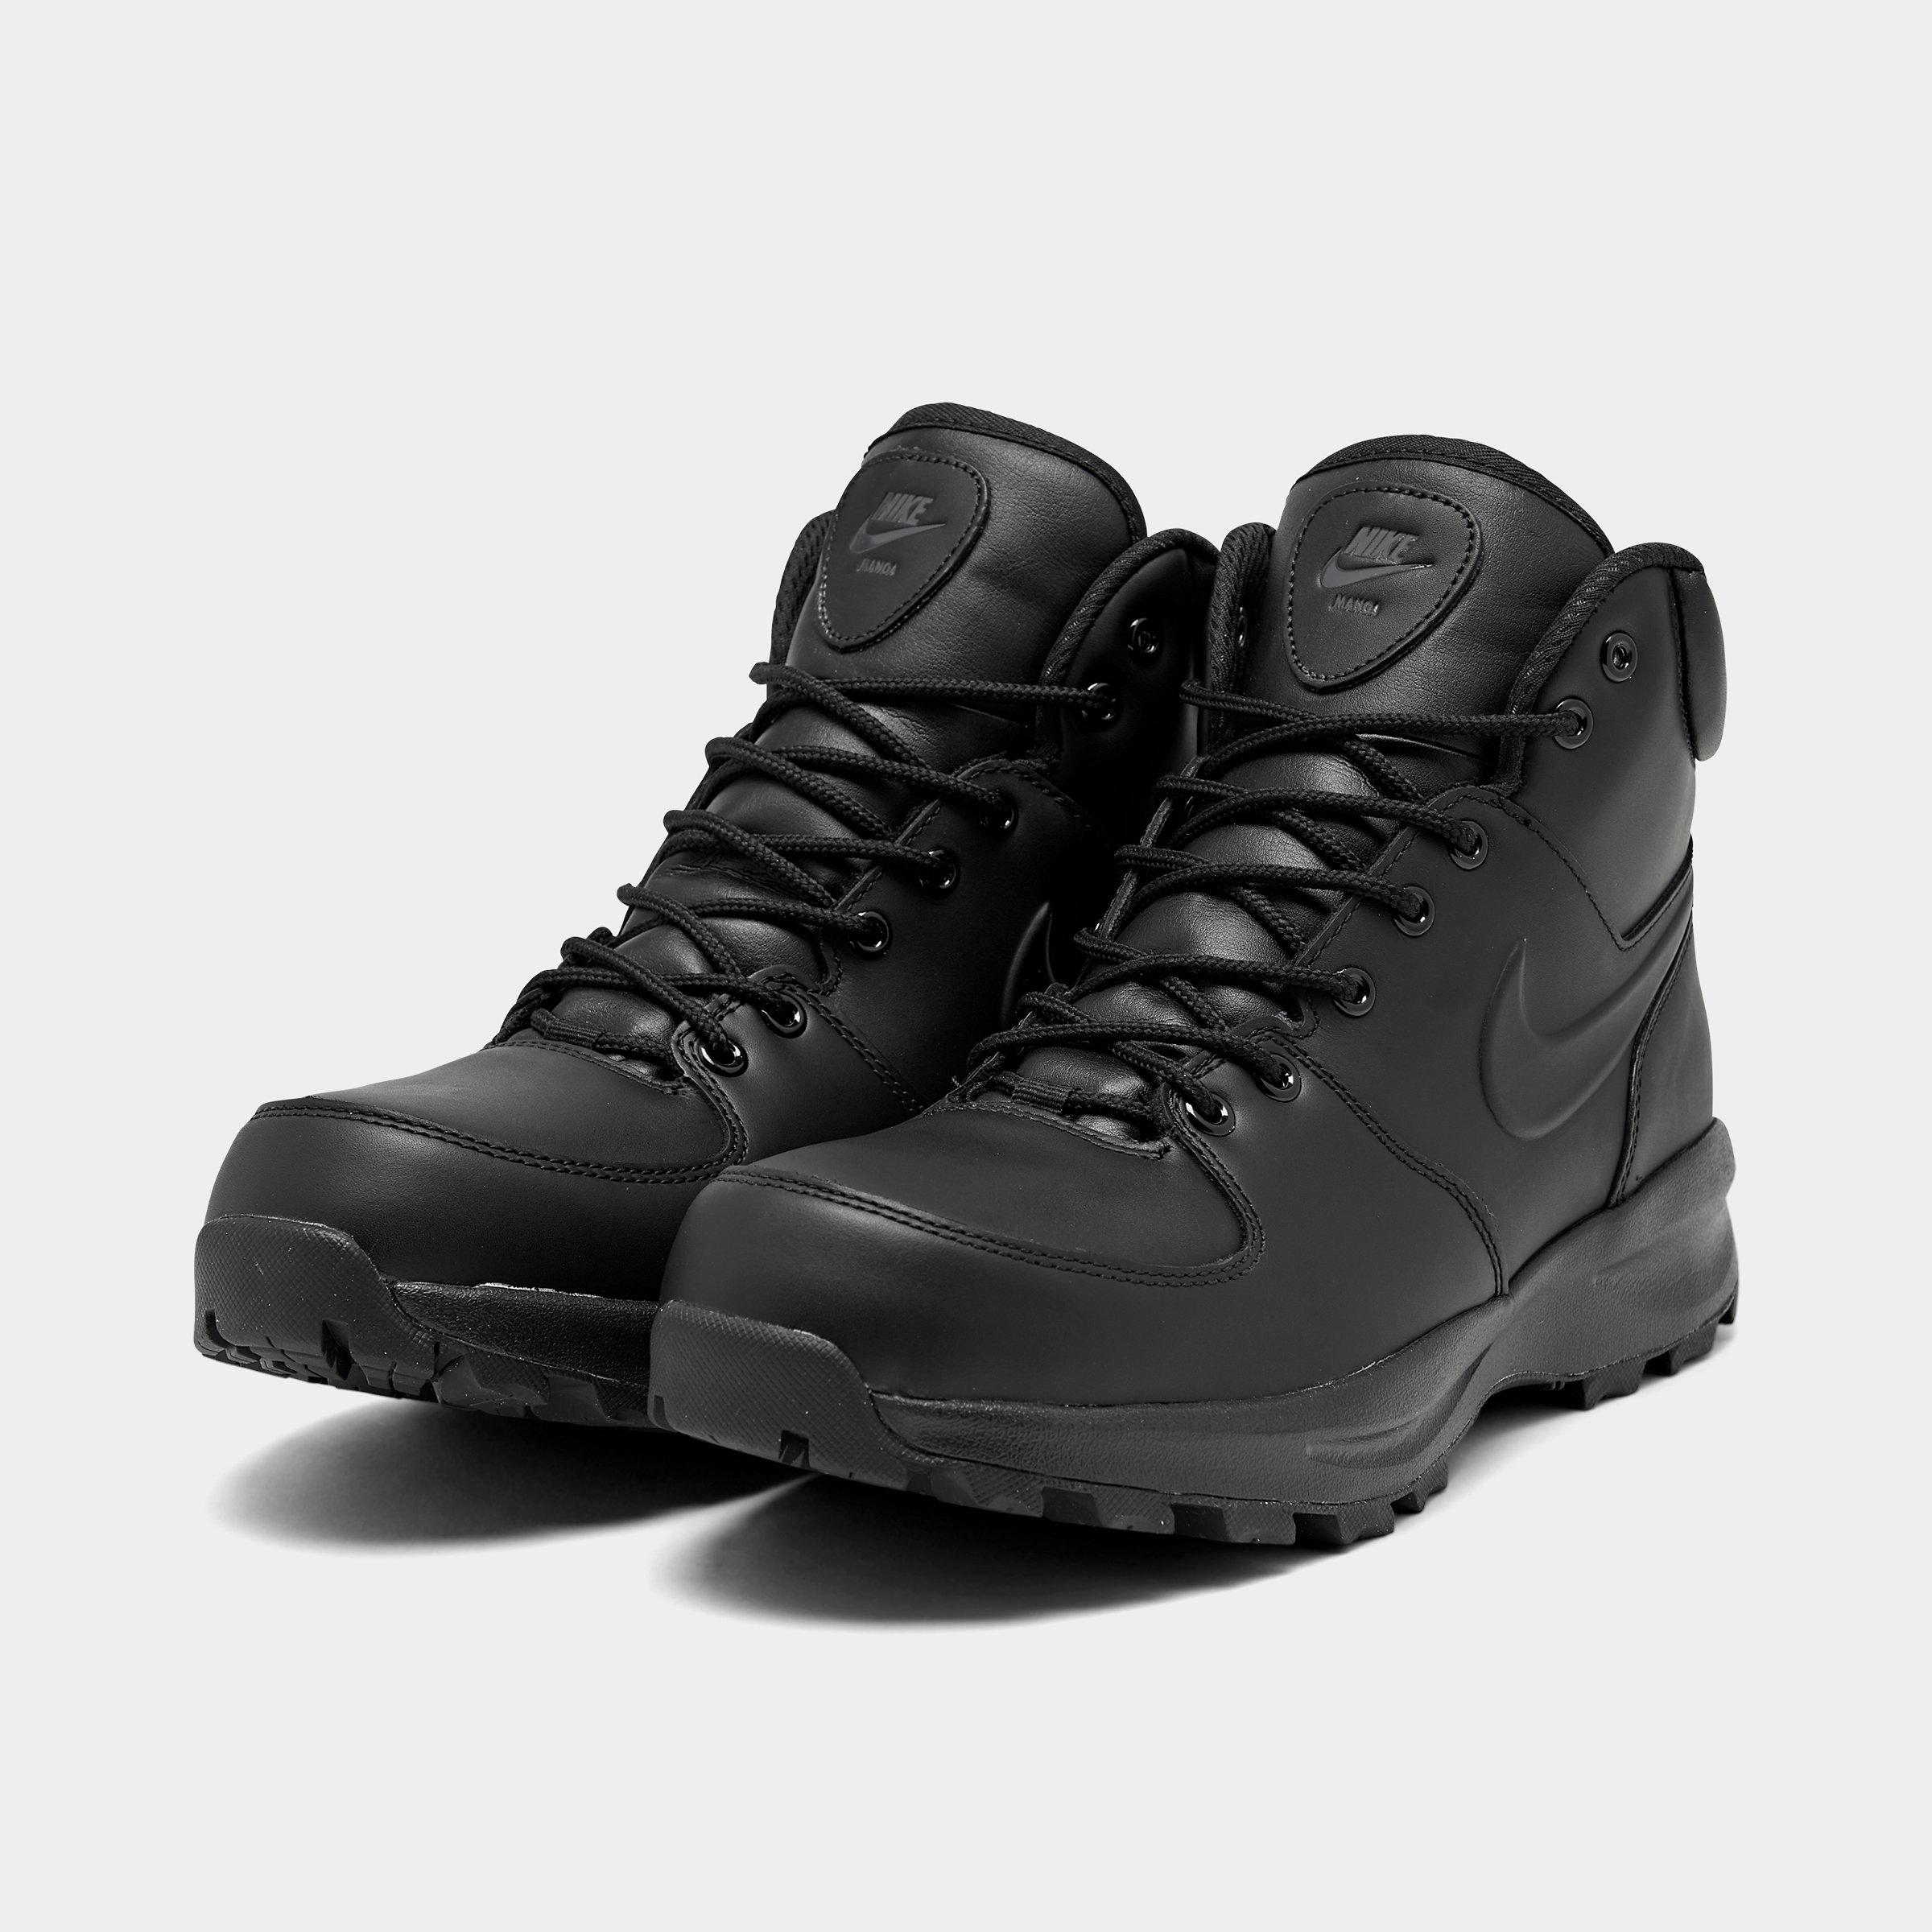 nike manoa leather boots black